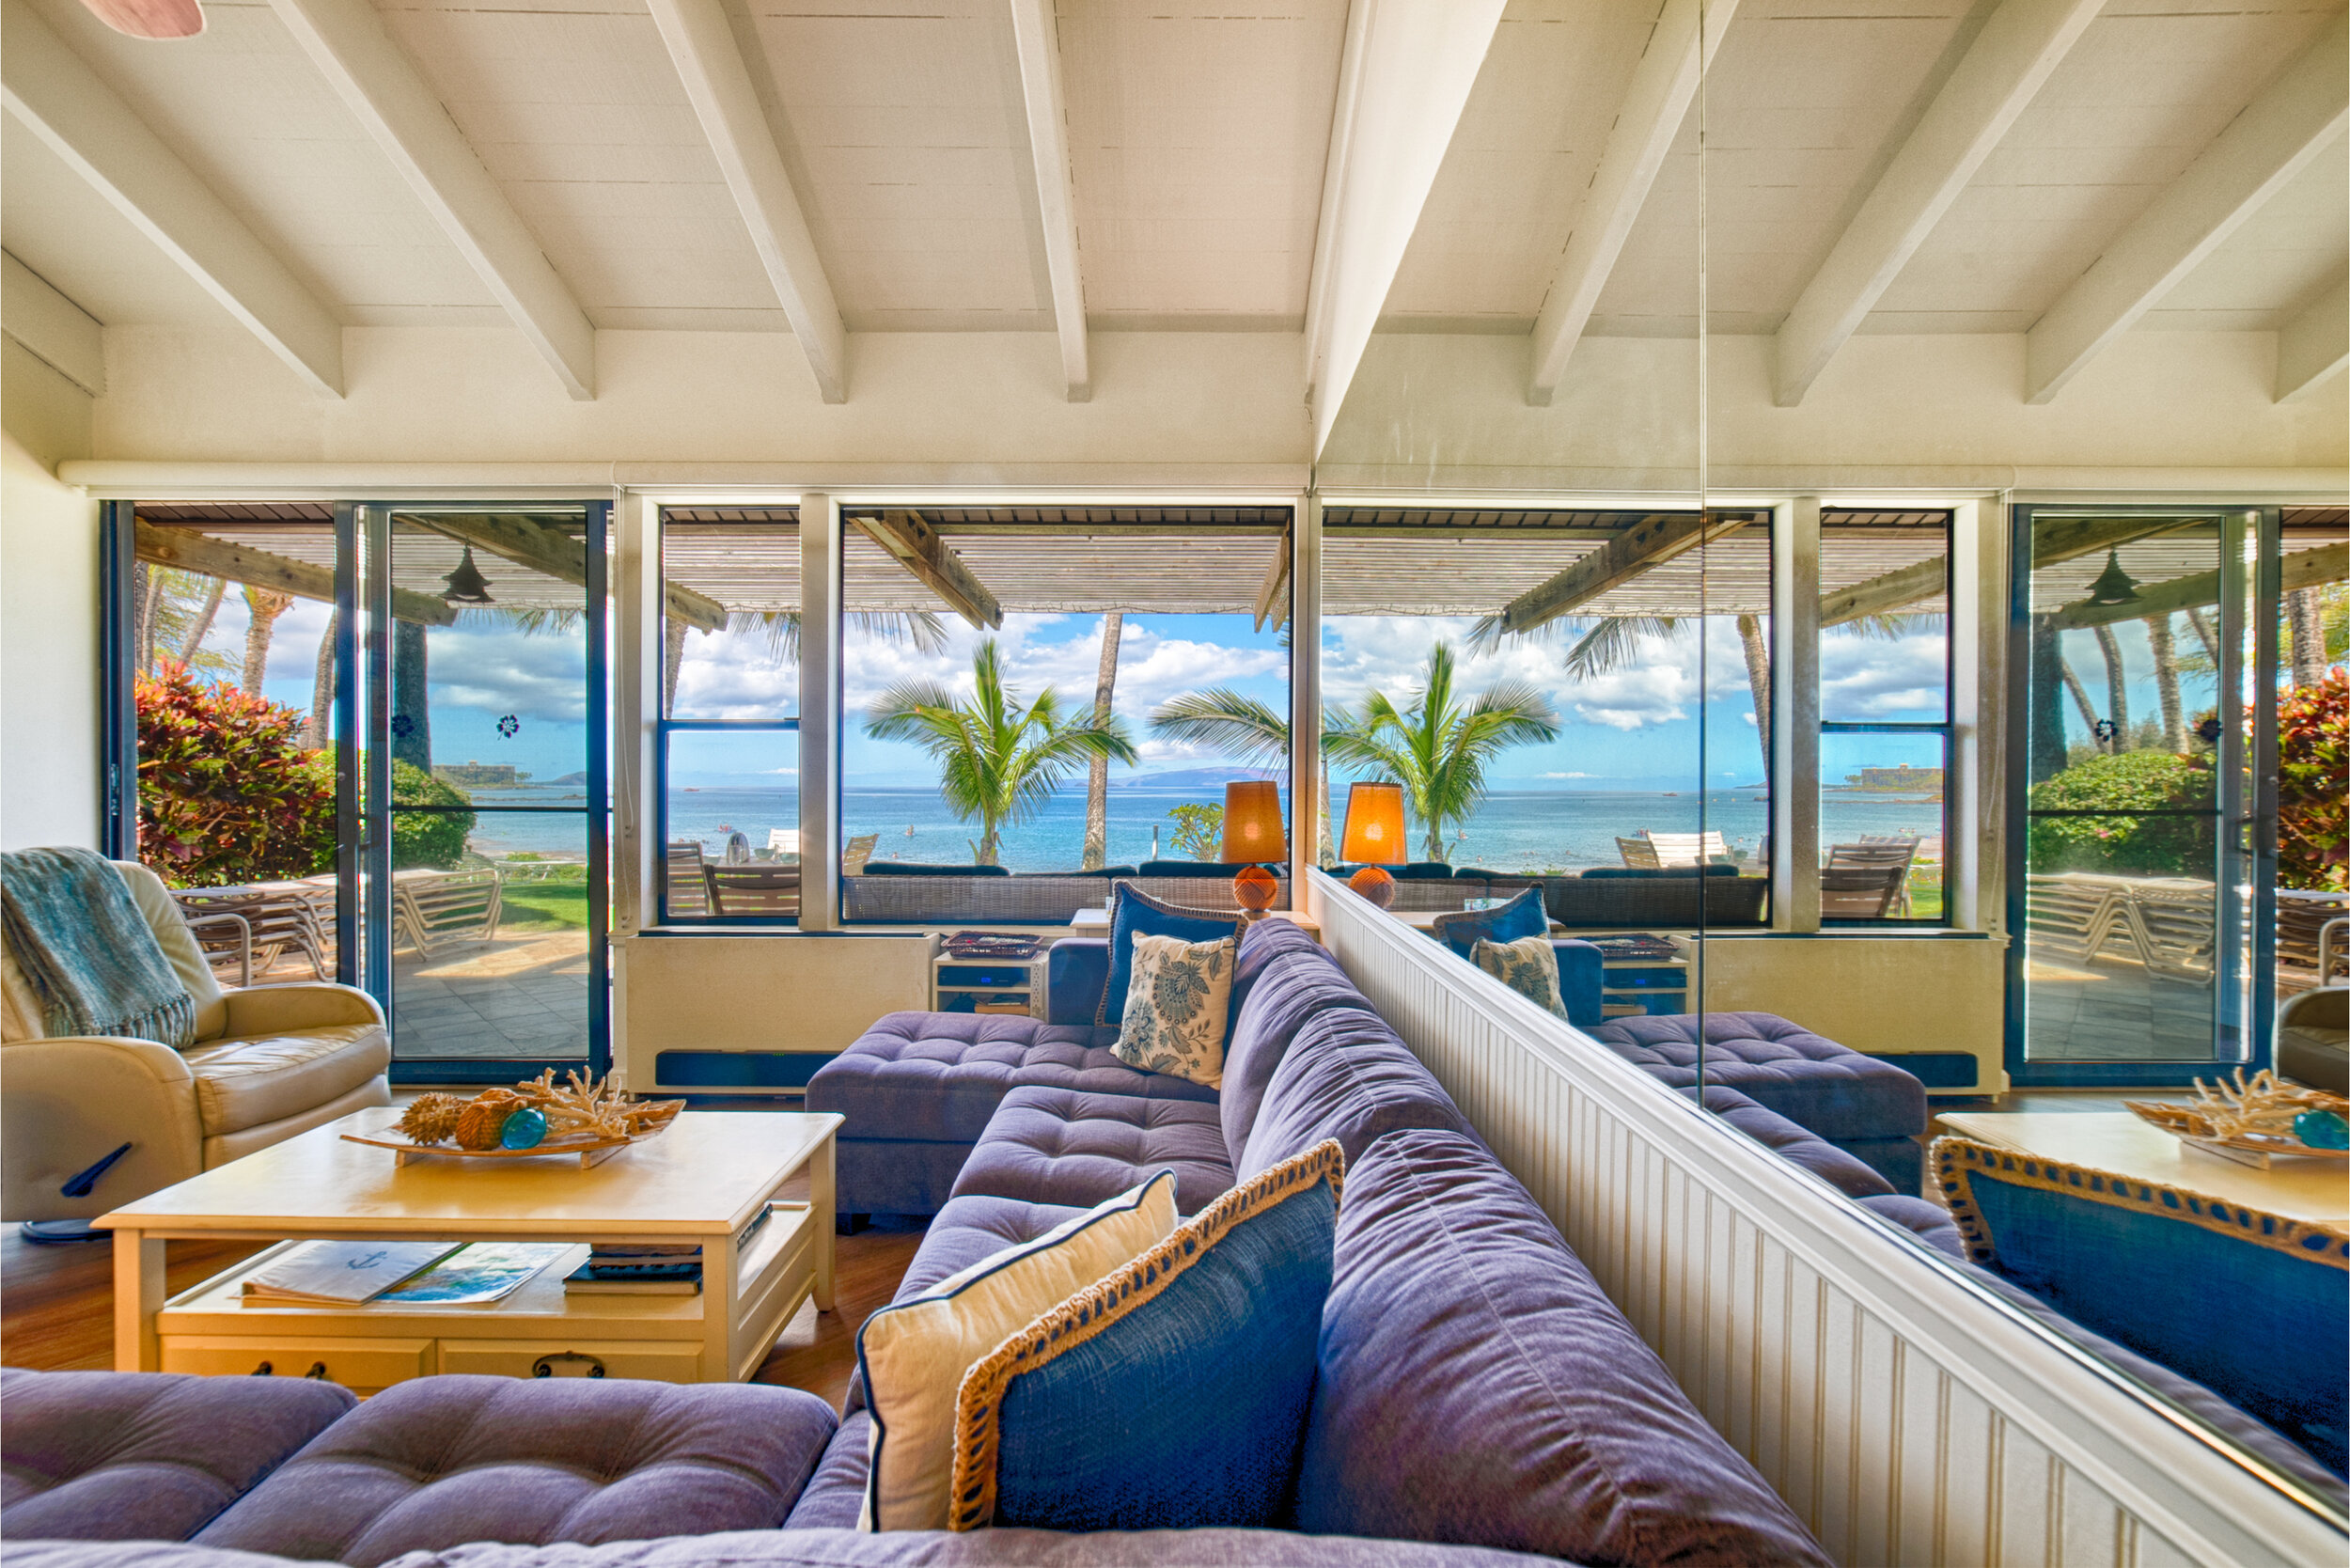 Maui - livingroom & ocean view.jpg